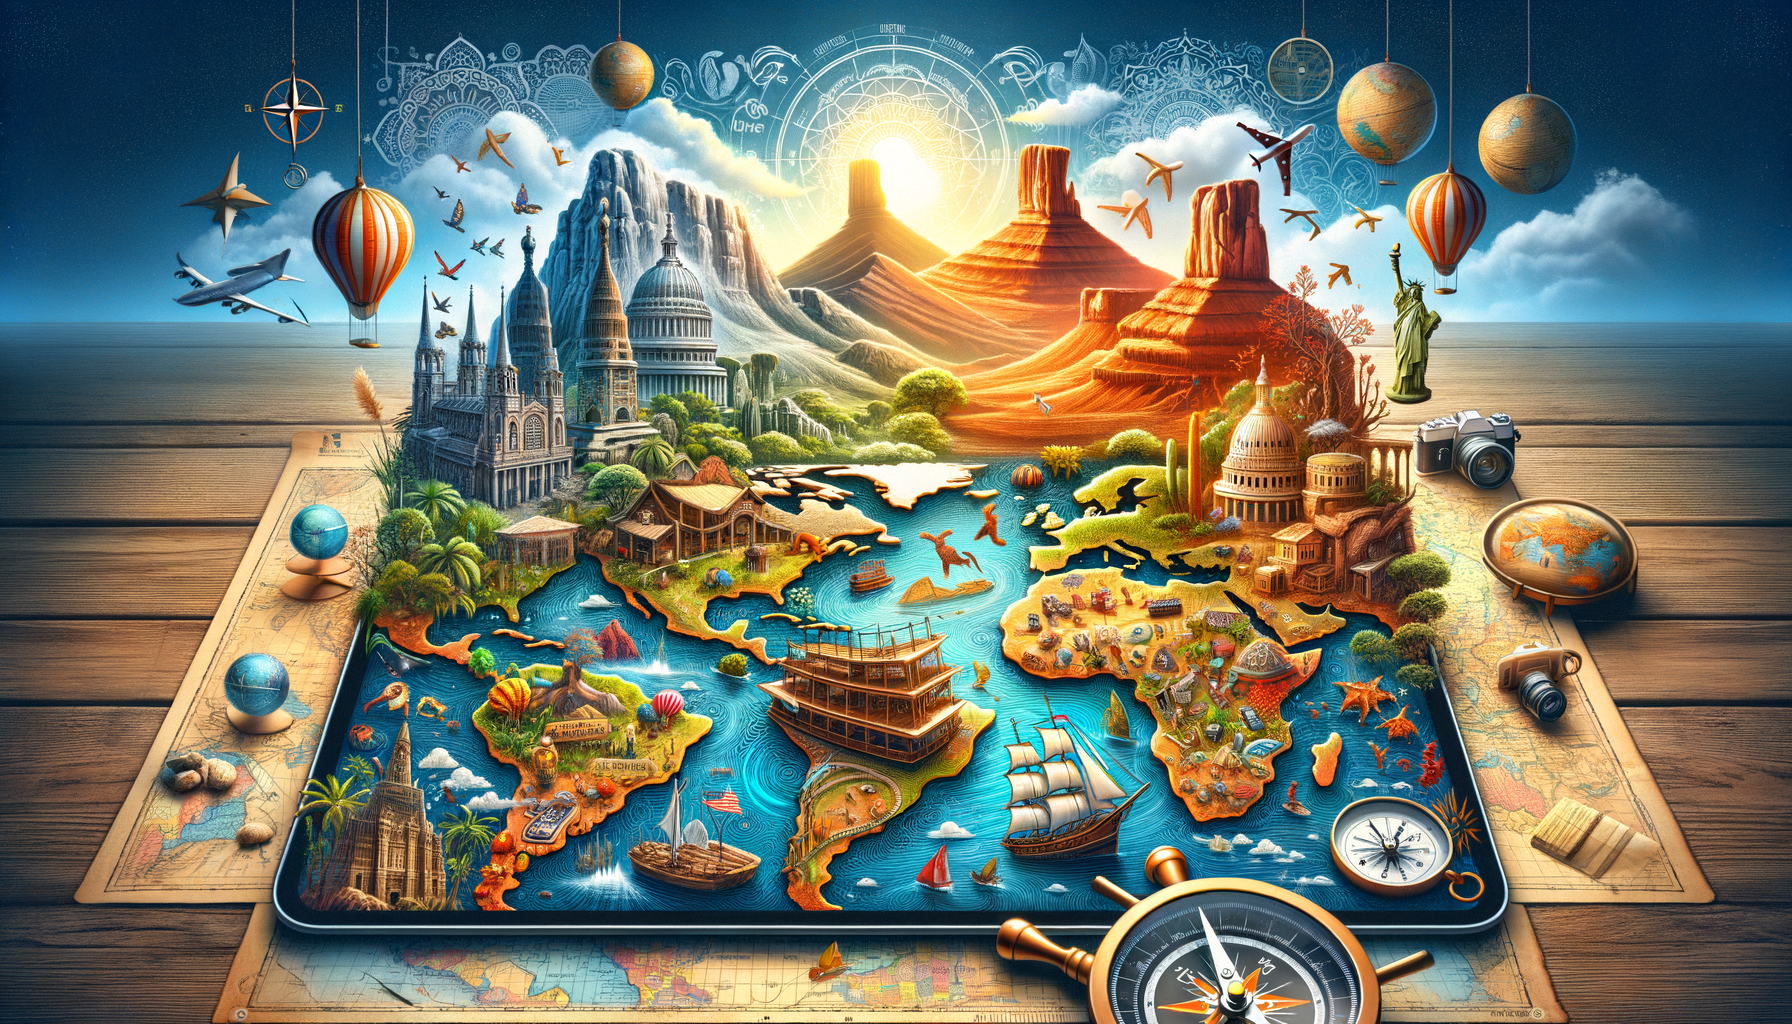 partez à la découverte du monde en faisant le tour des 5 continents. découvrez tous les secrets pour réaliser ce voyage exceptionnel !